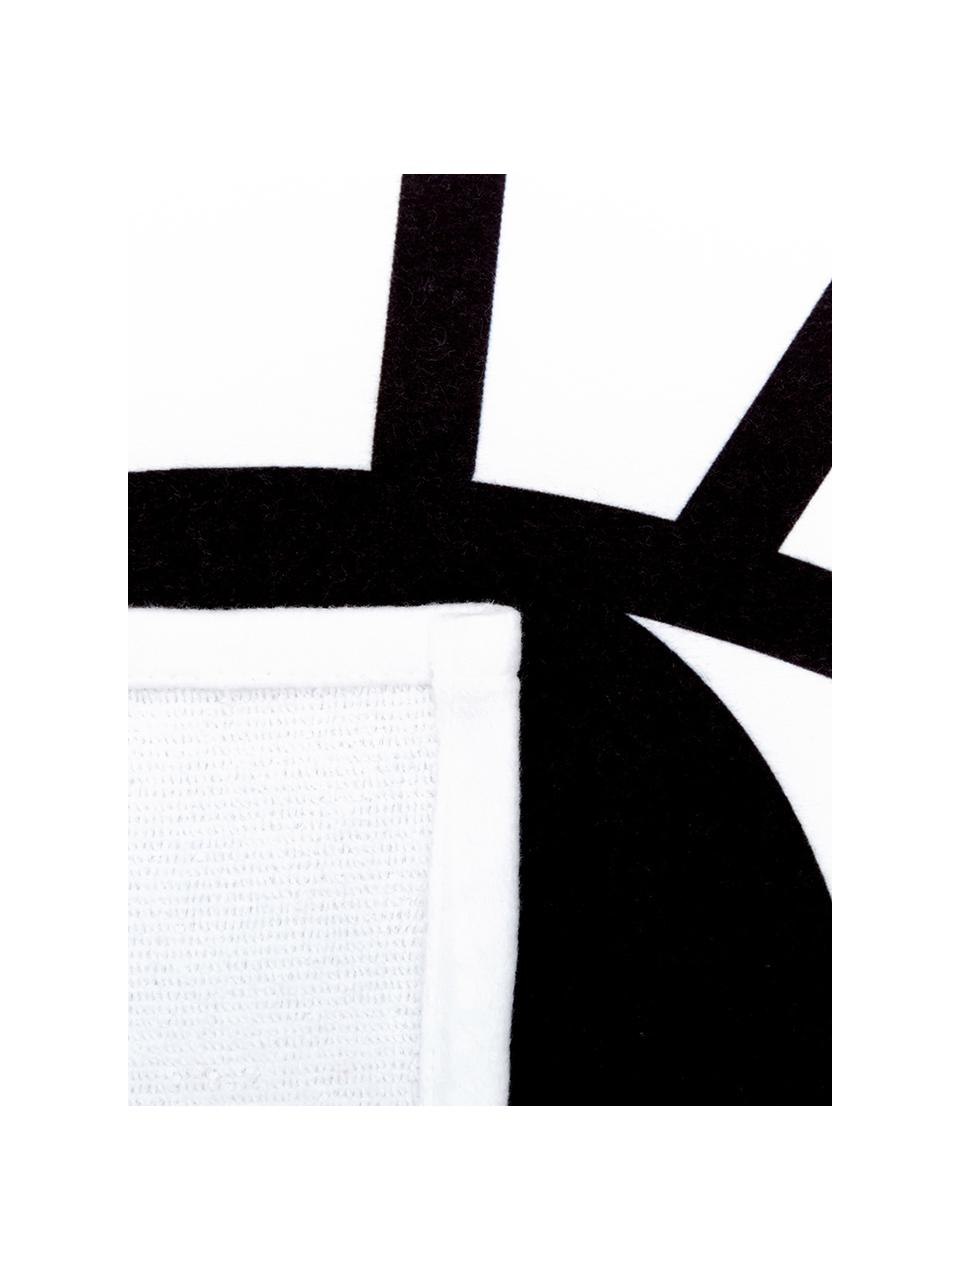 Ręcznik plażowy Eyes, 55% poliester, 45% bawełna
Bardzo niska gramatura, 340 g/m², Biały, czarny, S 70 x D 150 cm